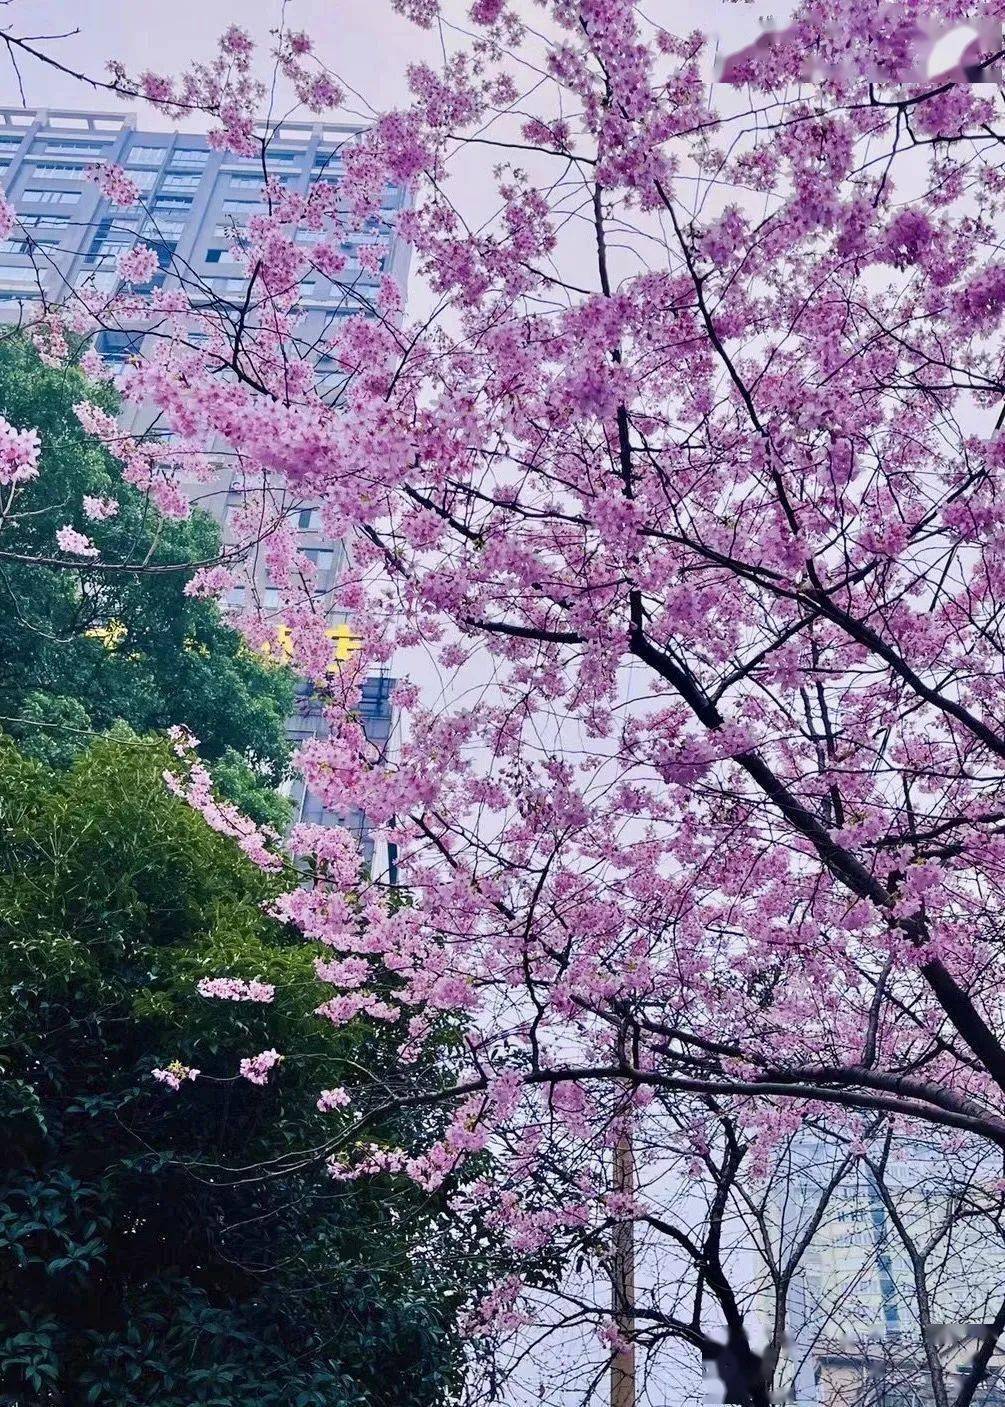 常德高山街樱花已上线,快去打卡拍照吧!